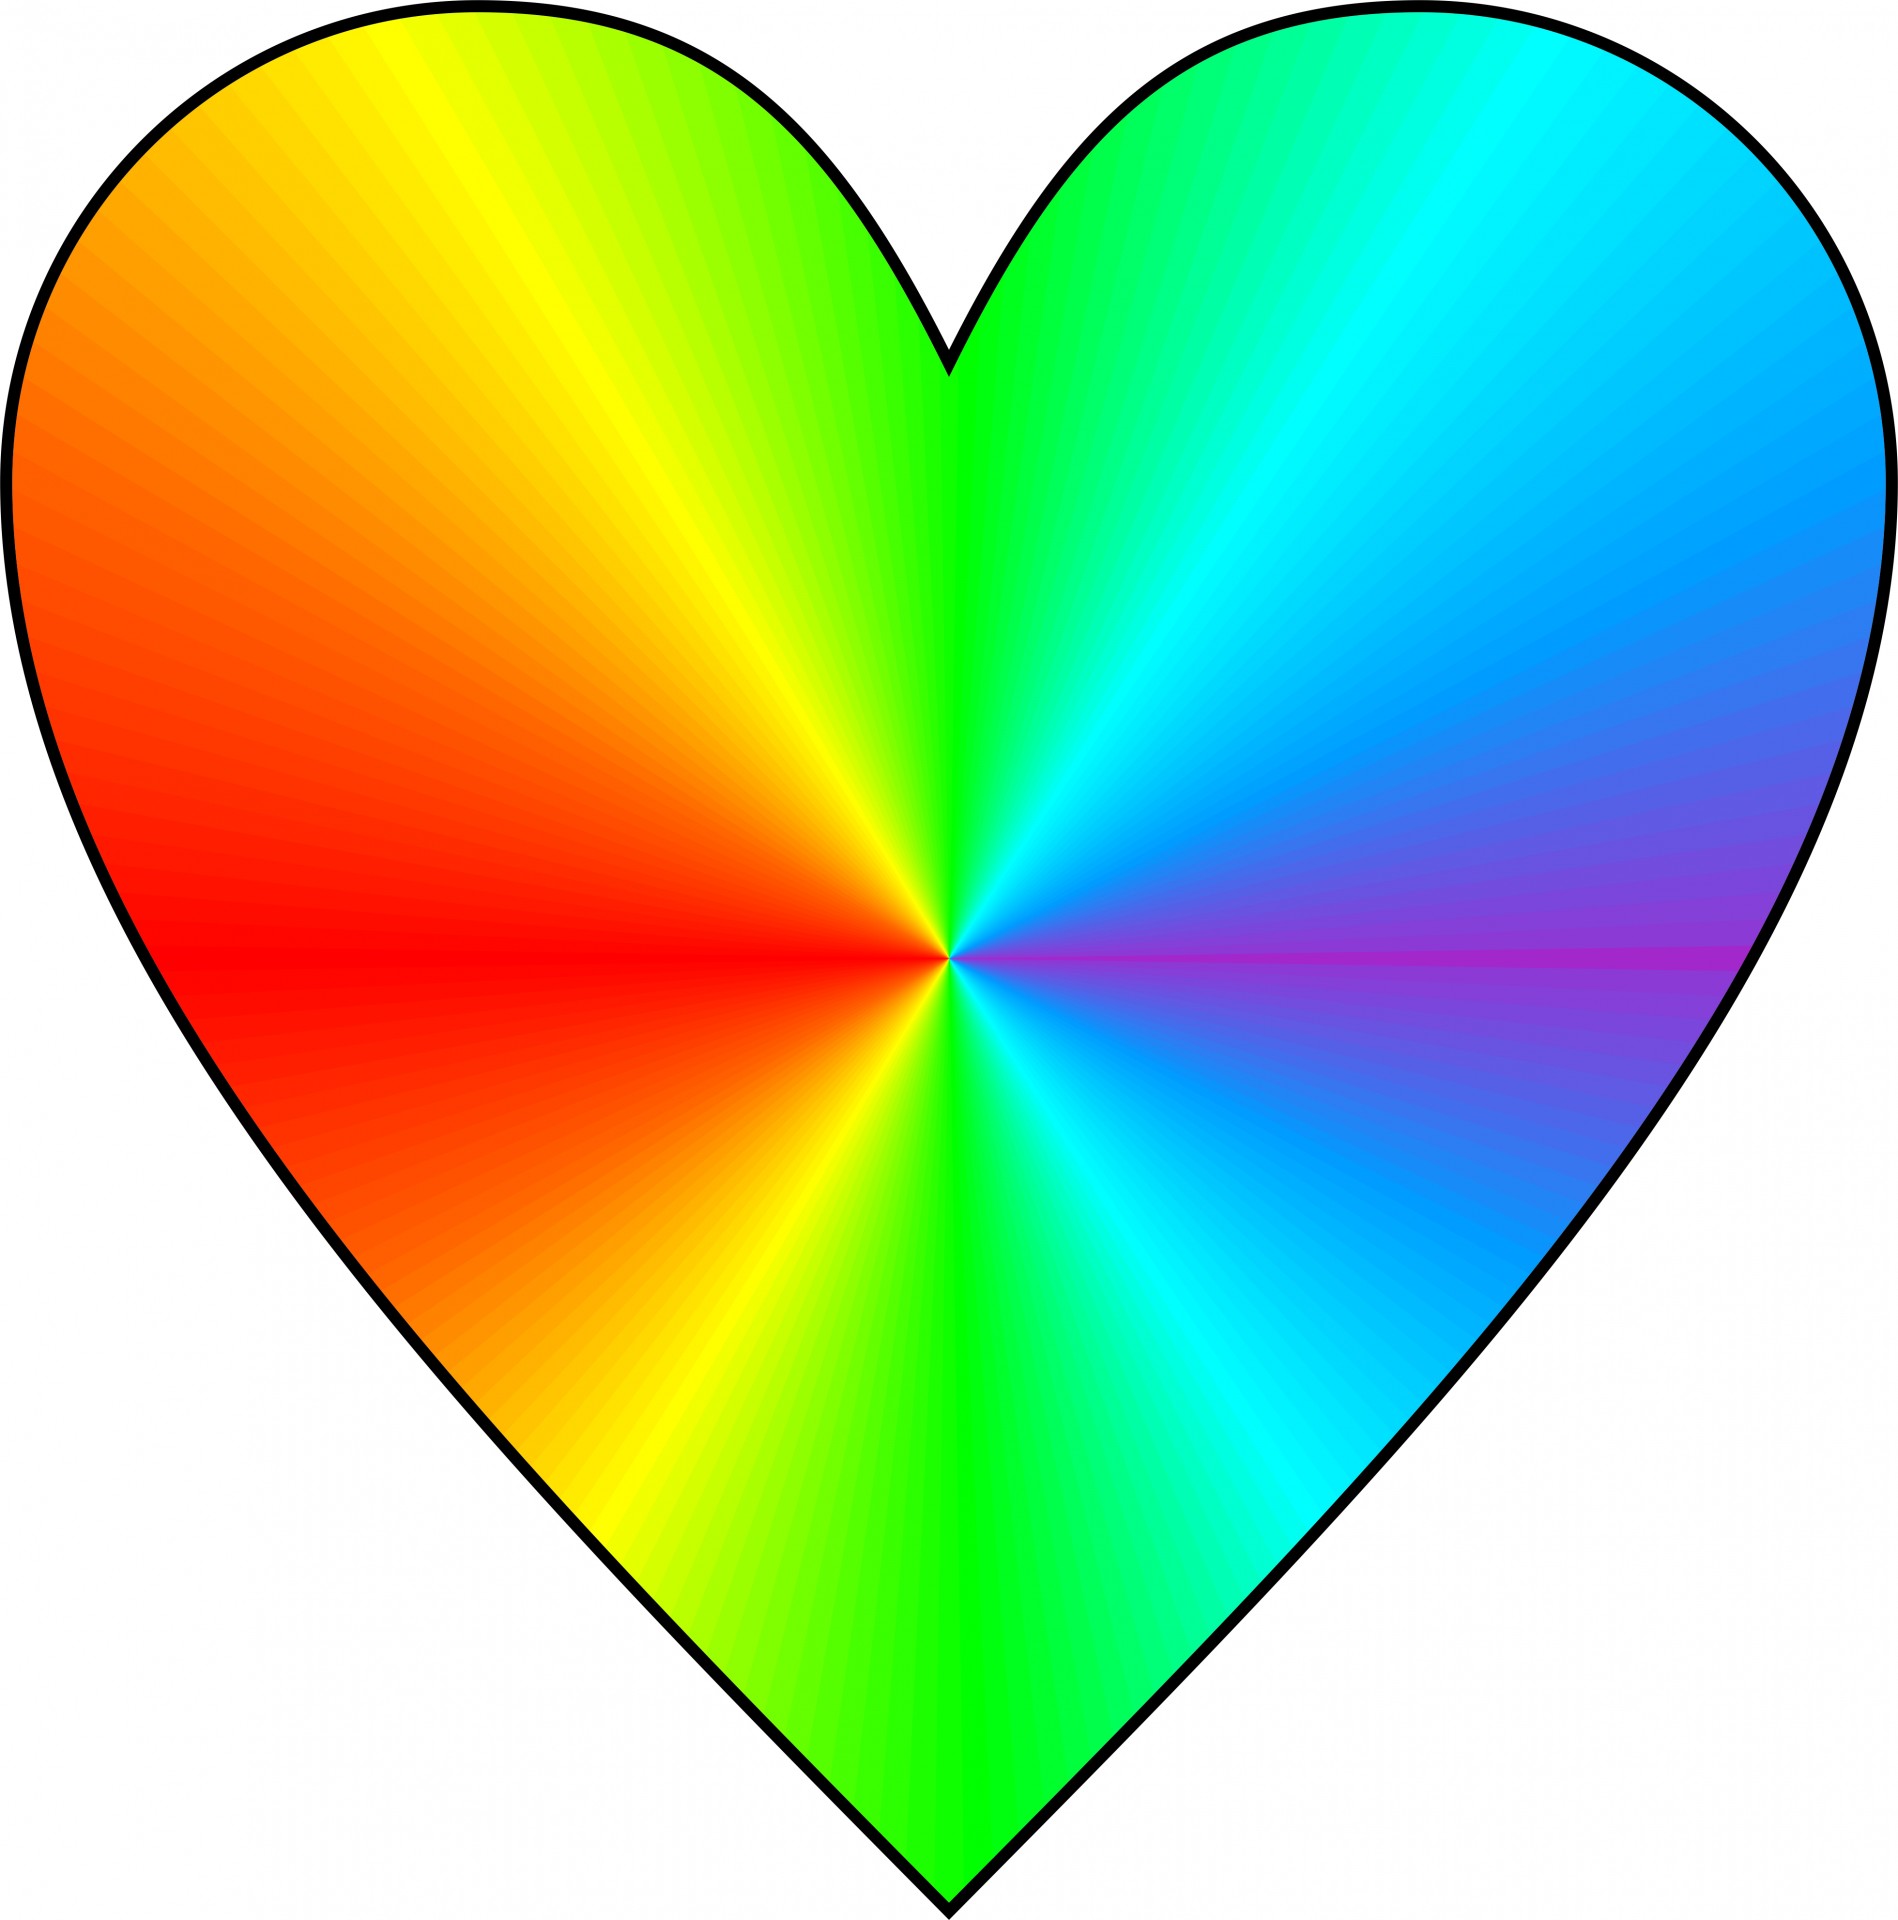 Conical rainbow heart